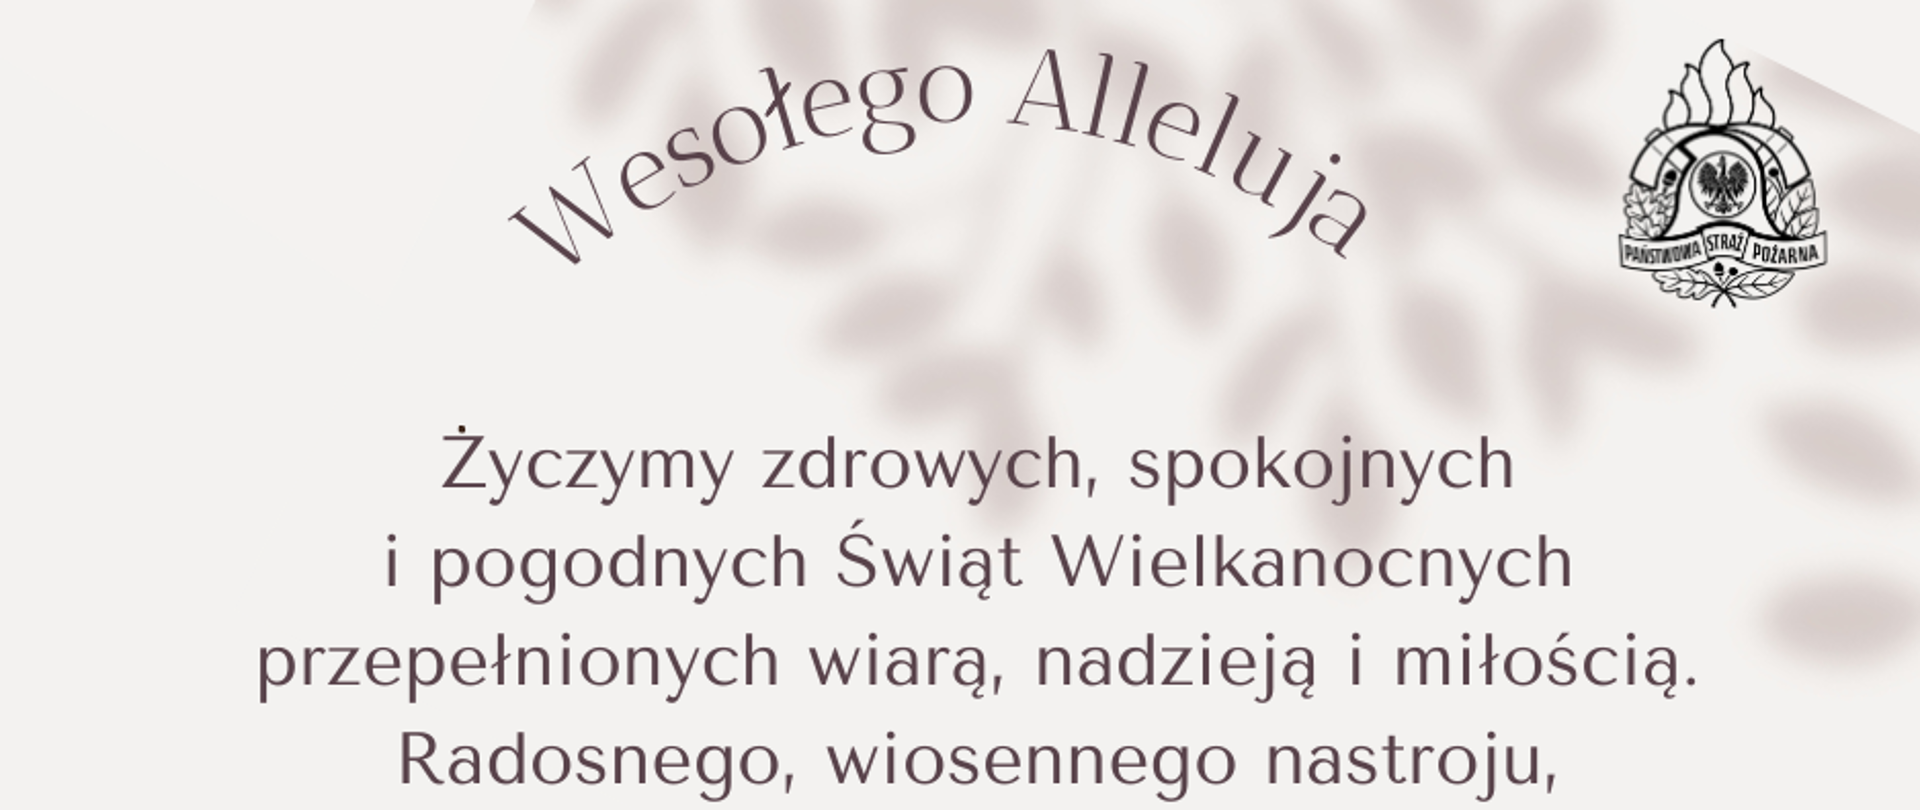 Życzenia wielkanocne Komendanta Powiatowego PSP w Ostrzeszowie. W prawym górnym rogu czarne logo monochromatyczne Państwowej Straży Pożarnej. W lewym dolnym rogu gniazdko z kwiatkiem i jajkami.